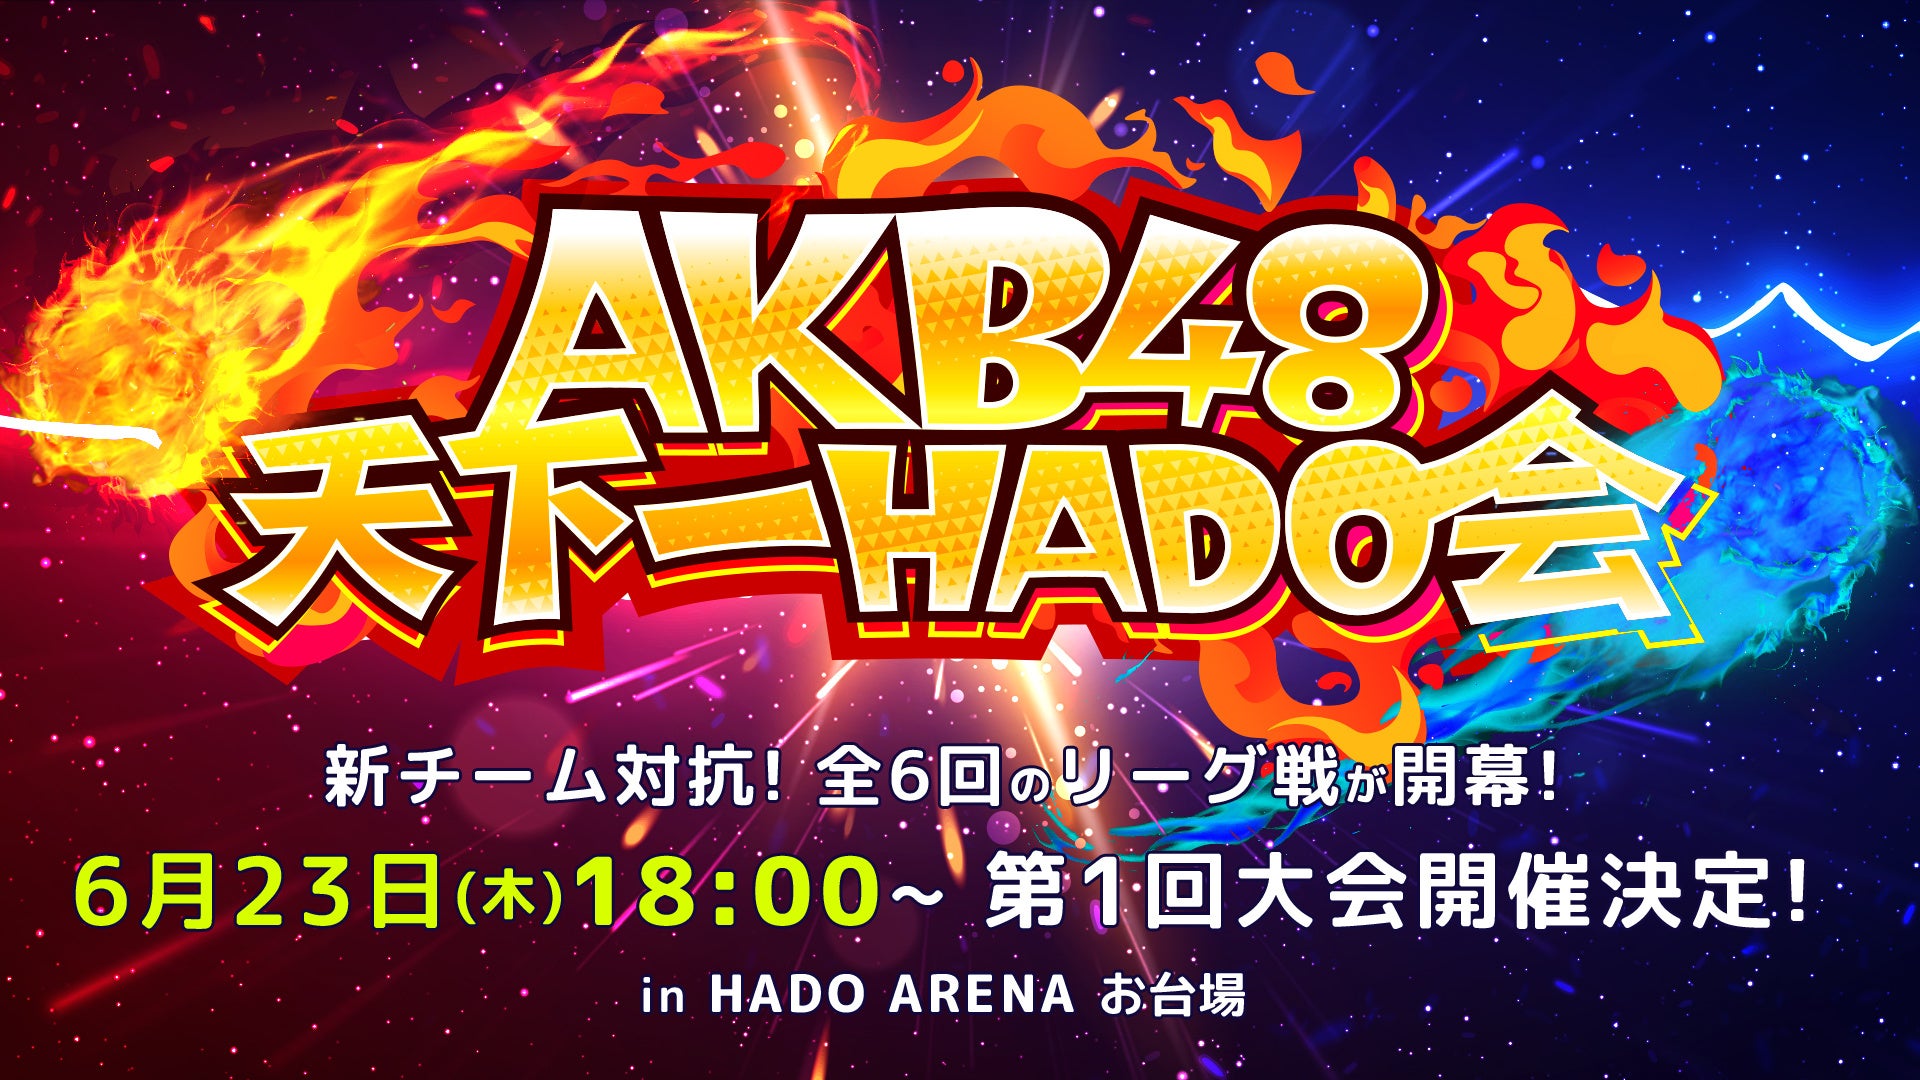 AKB48がARスポーツHADOでリーグ戦！「AKB48天下一HADO会」開催決定！